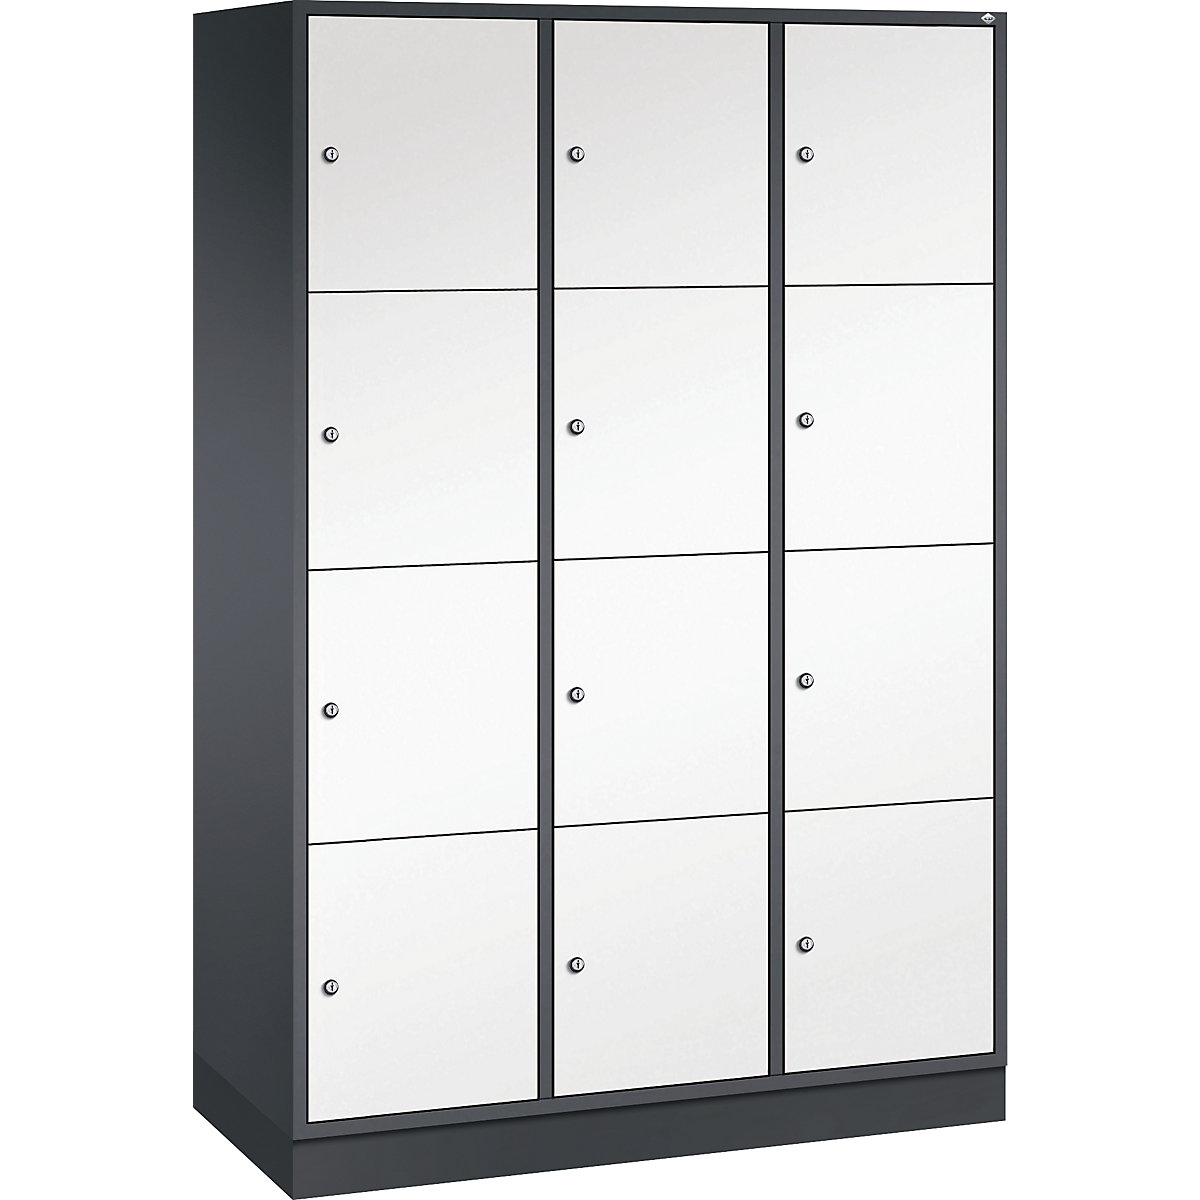 Vestiaire multicases en acier INTRO, casiers hauteur 435 mm – C+P, l x p 1220 x 500 mm, 12 casiers, corps gris noir, portes blanc pur-9